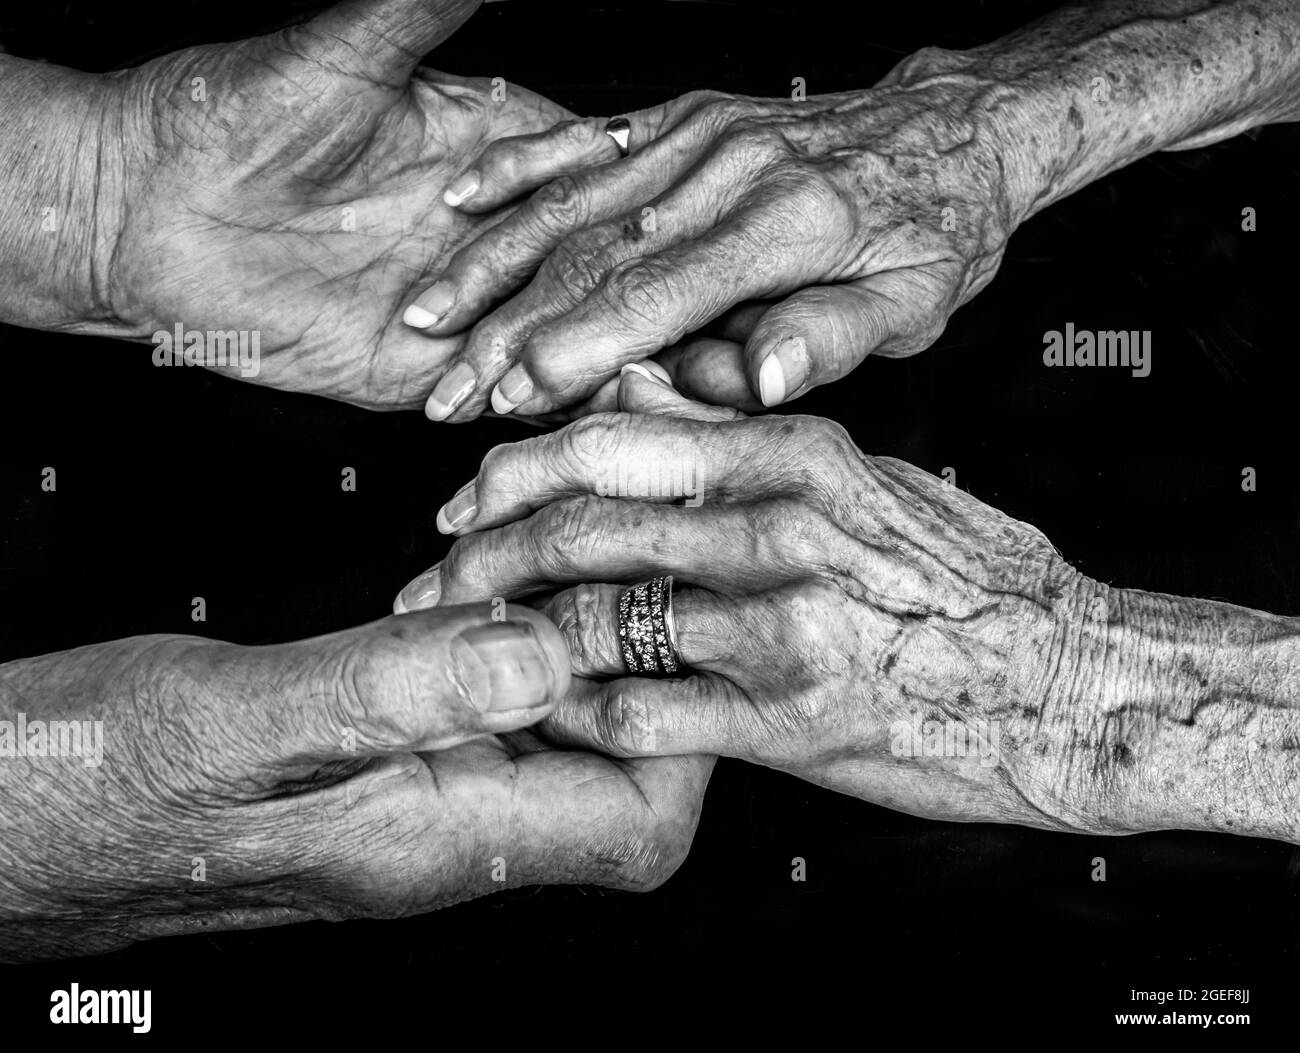 Ein schwarz-weißes Bild eines älteren Paares, das die Hände hält. Die Frau trägt einen Ehering und beide scheinen eine fortgeschrittene Arthritis zu haben. Stockfoto